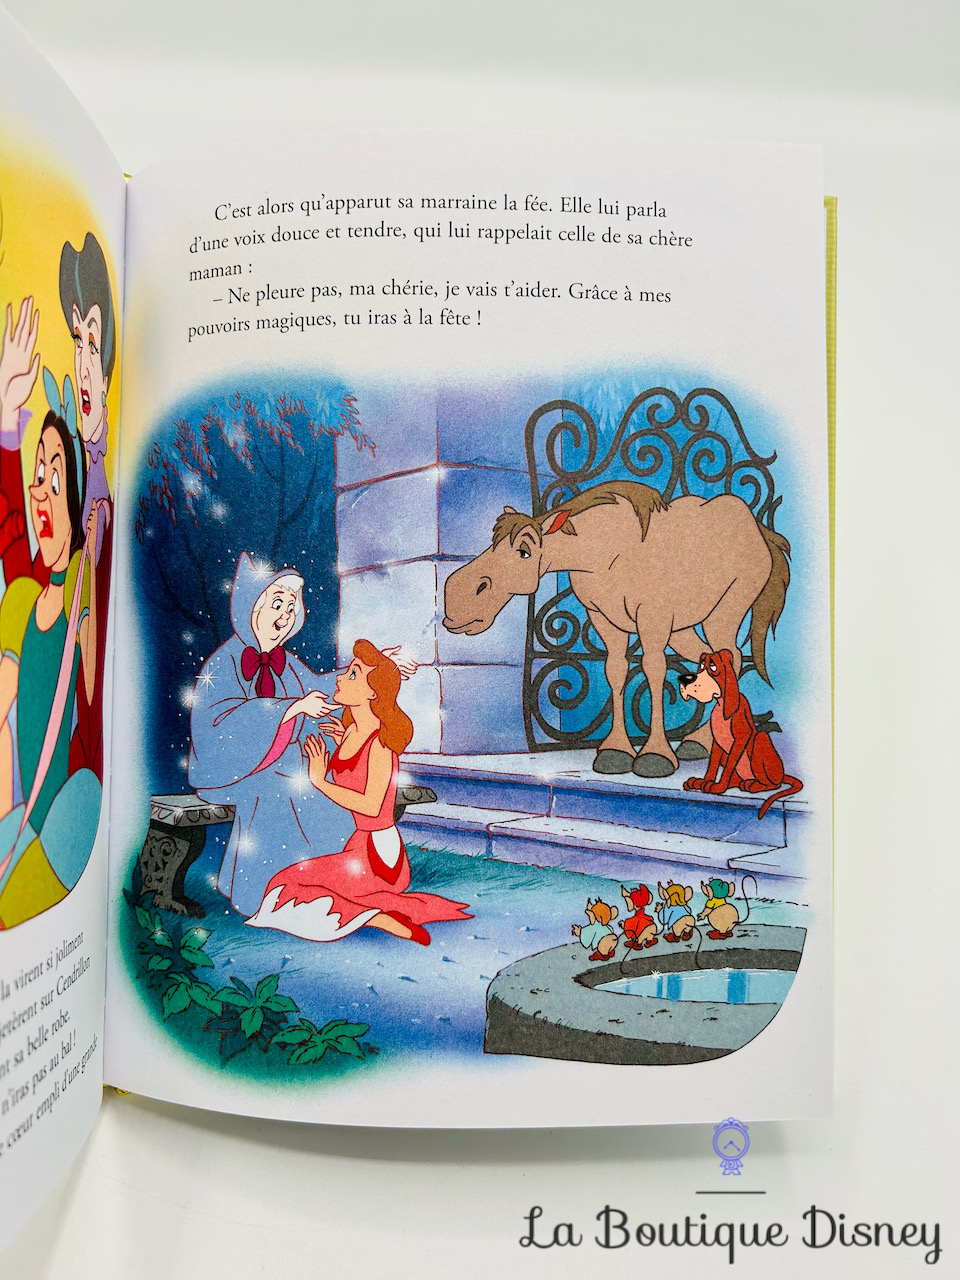 Livre Cendrillon Disney Mes Petits livres d'Or Les plus belles